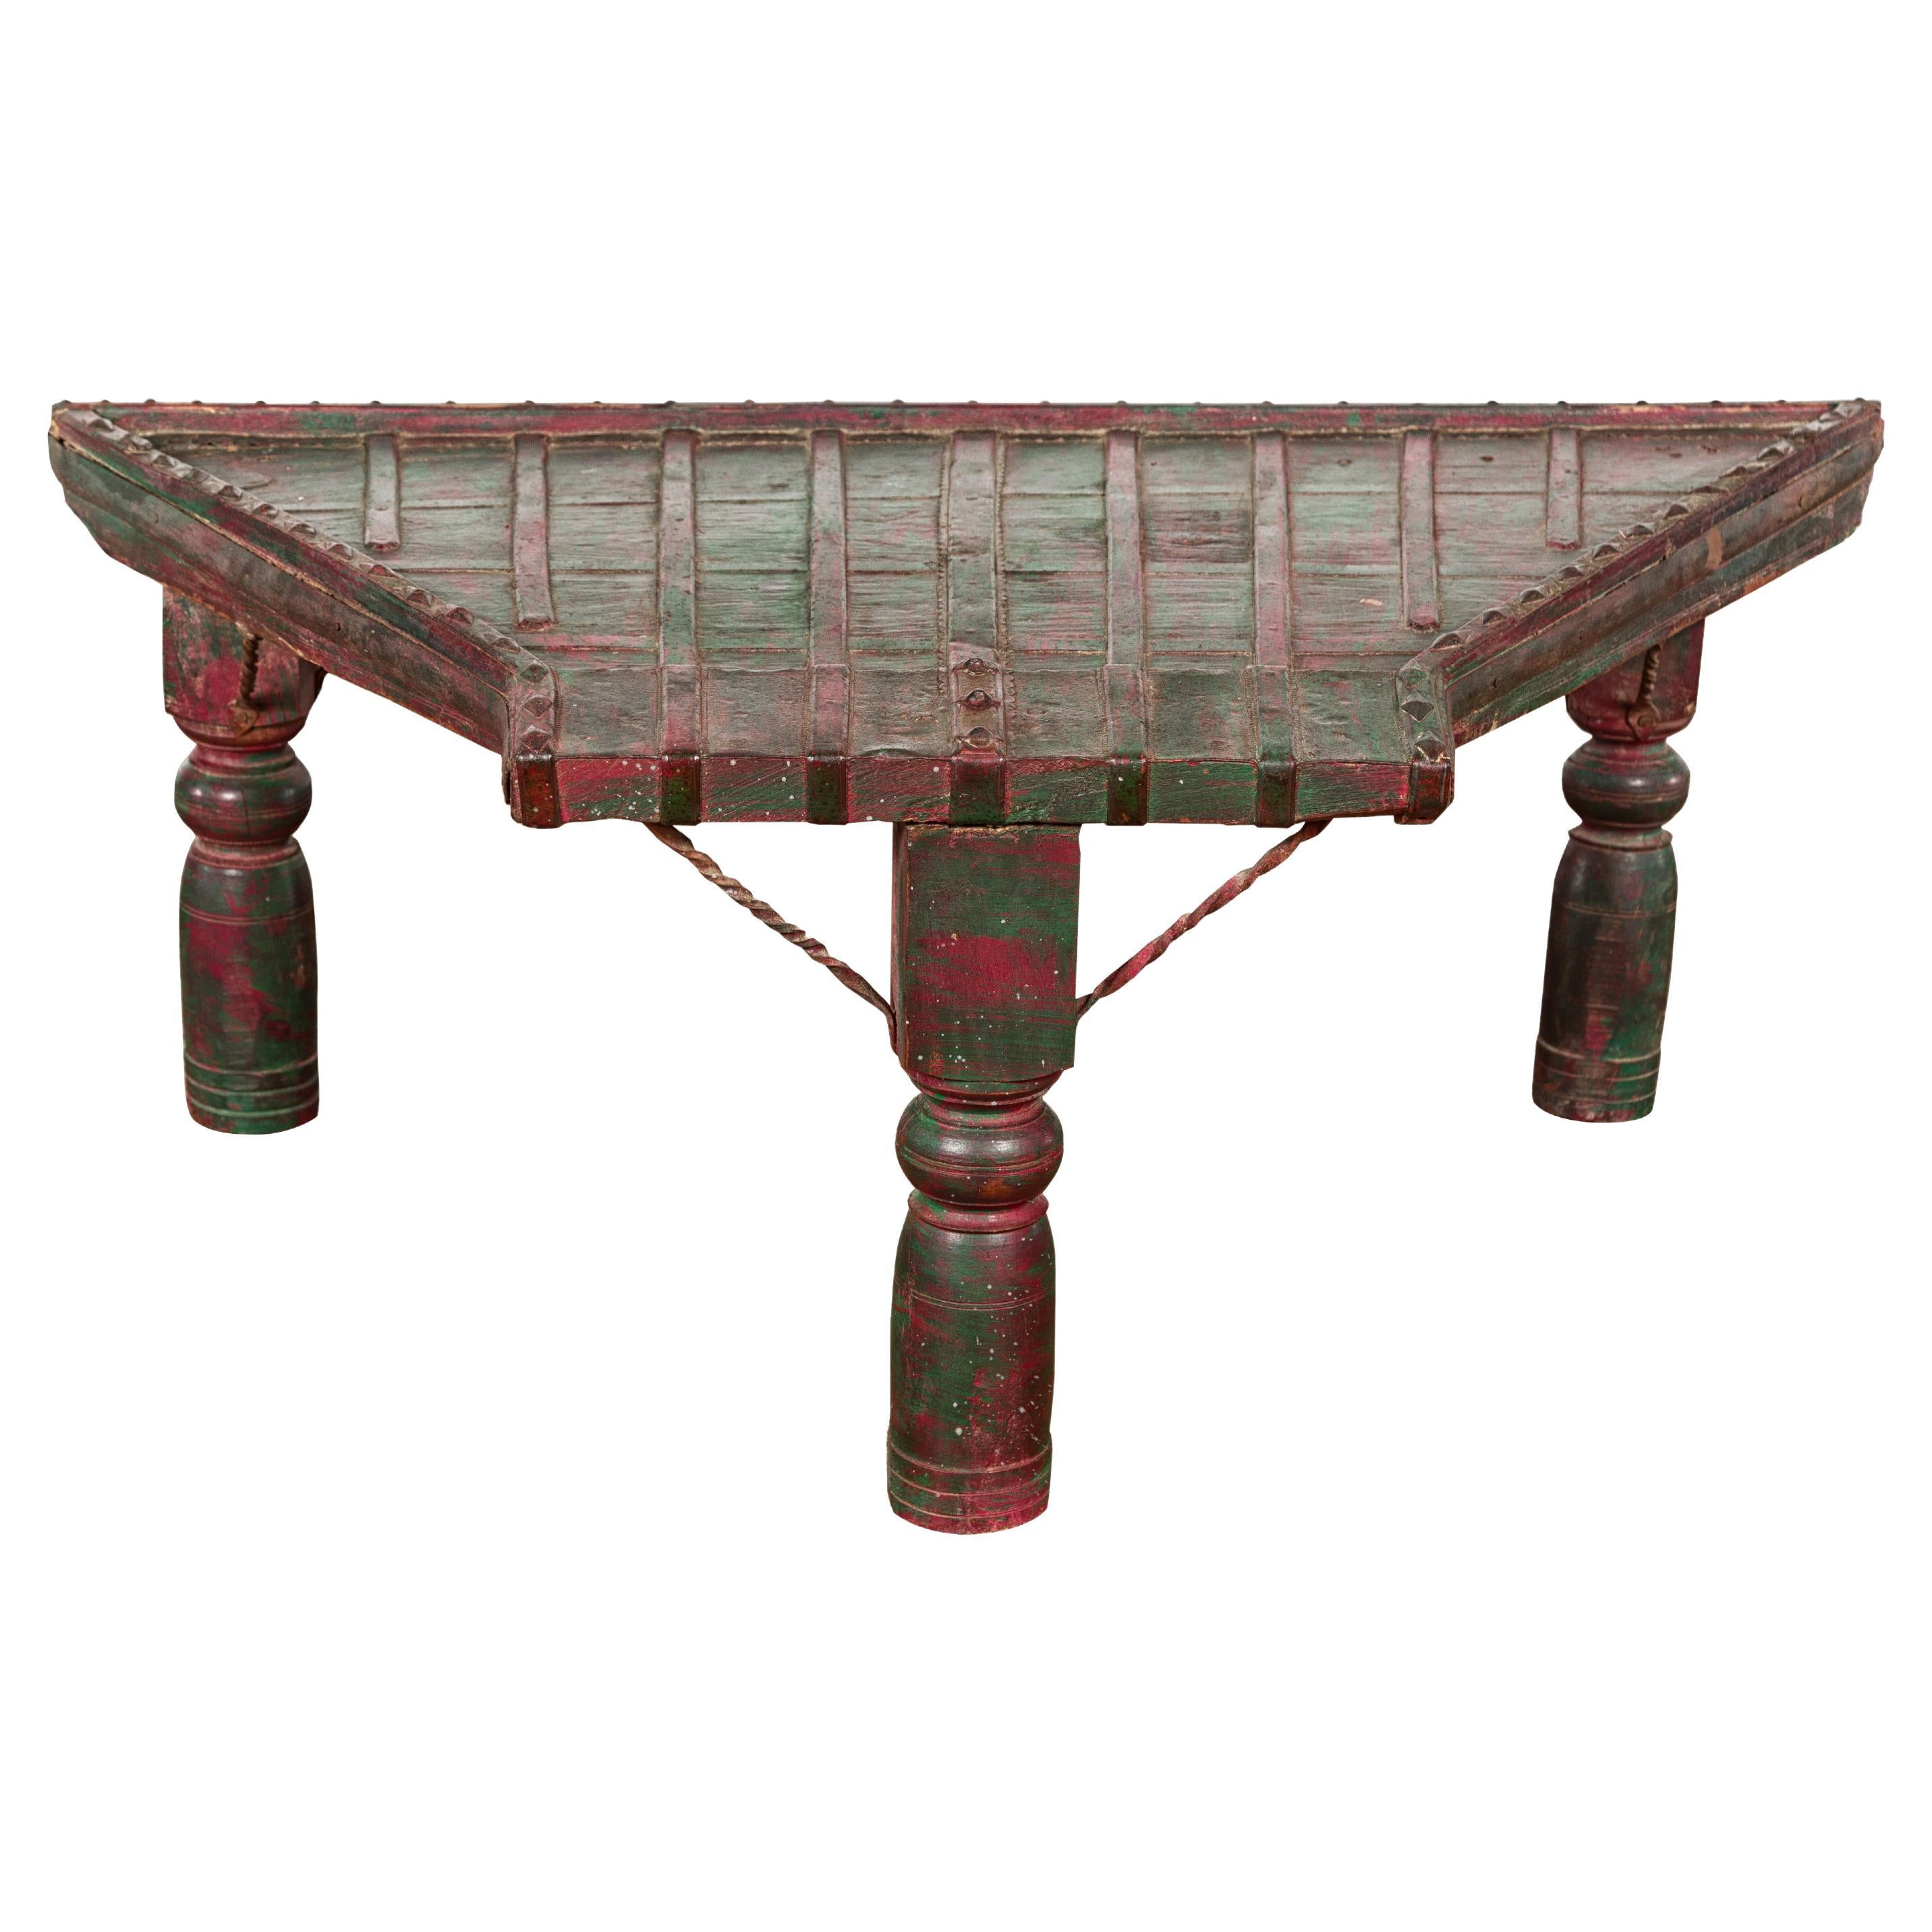 Table basse rustique laquée rouge et verte, pieds balustres tournés et fer en vente